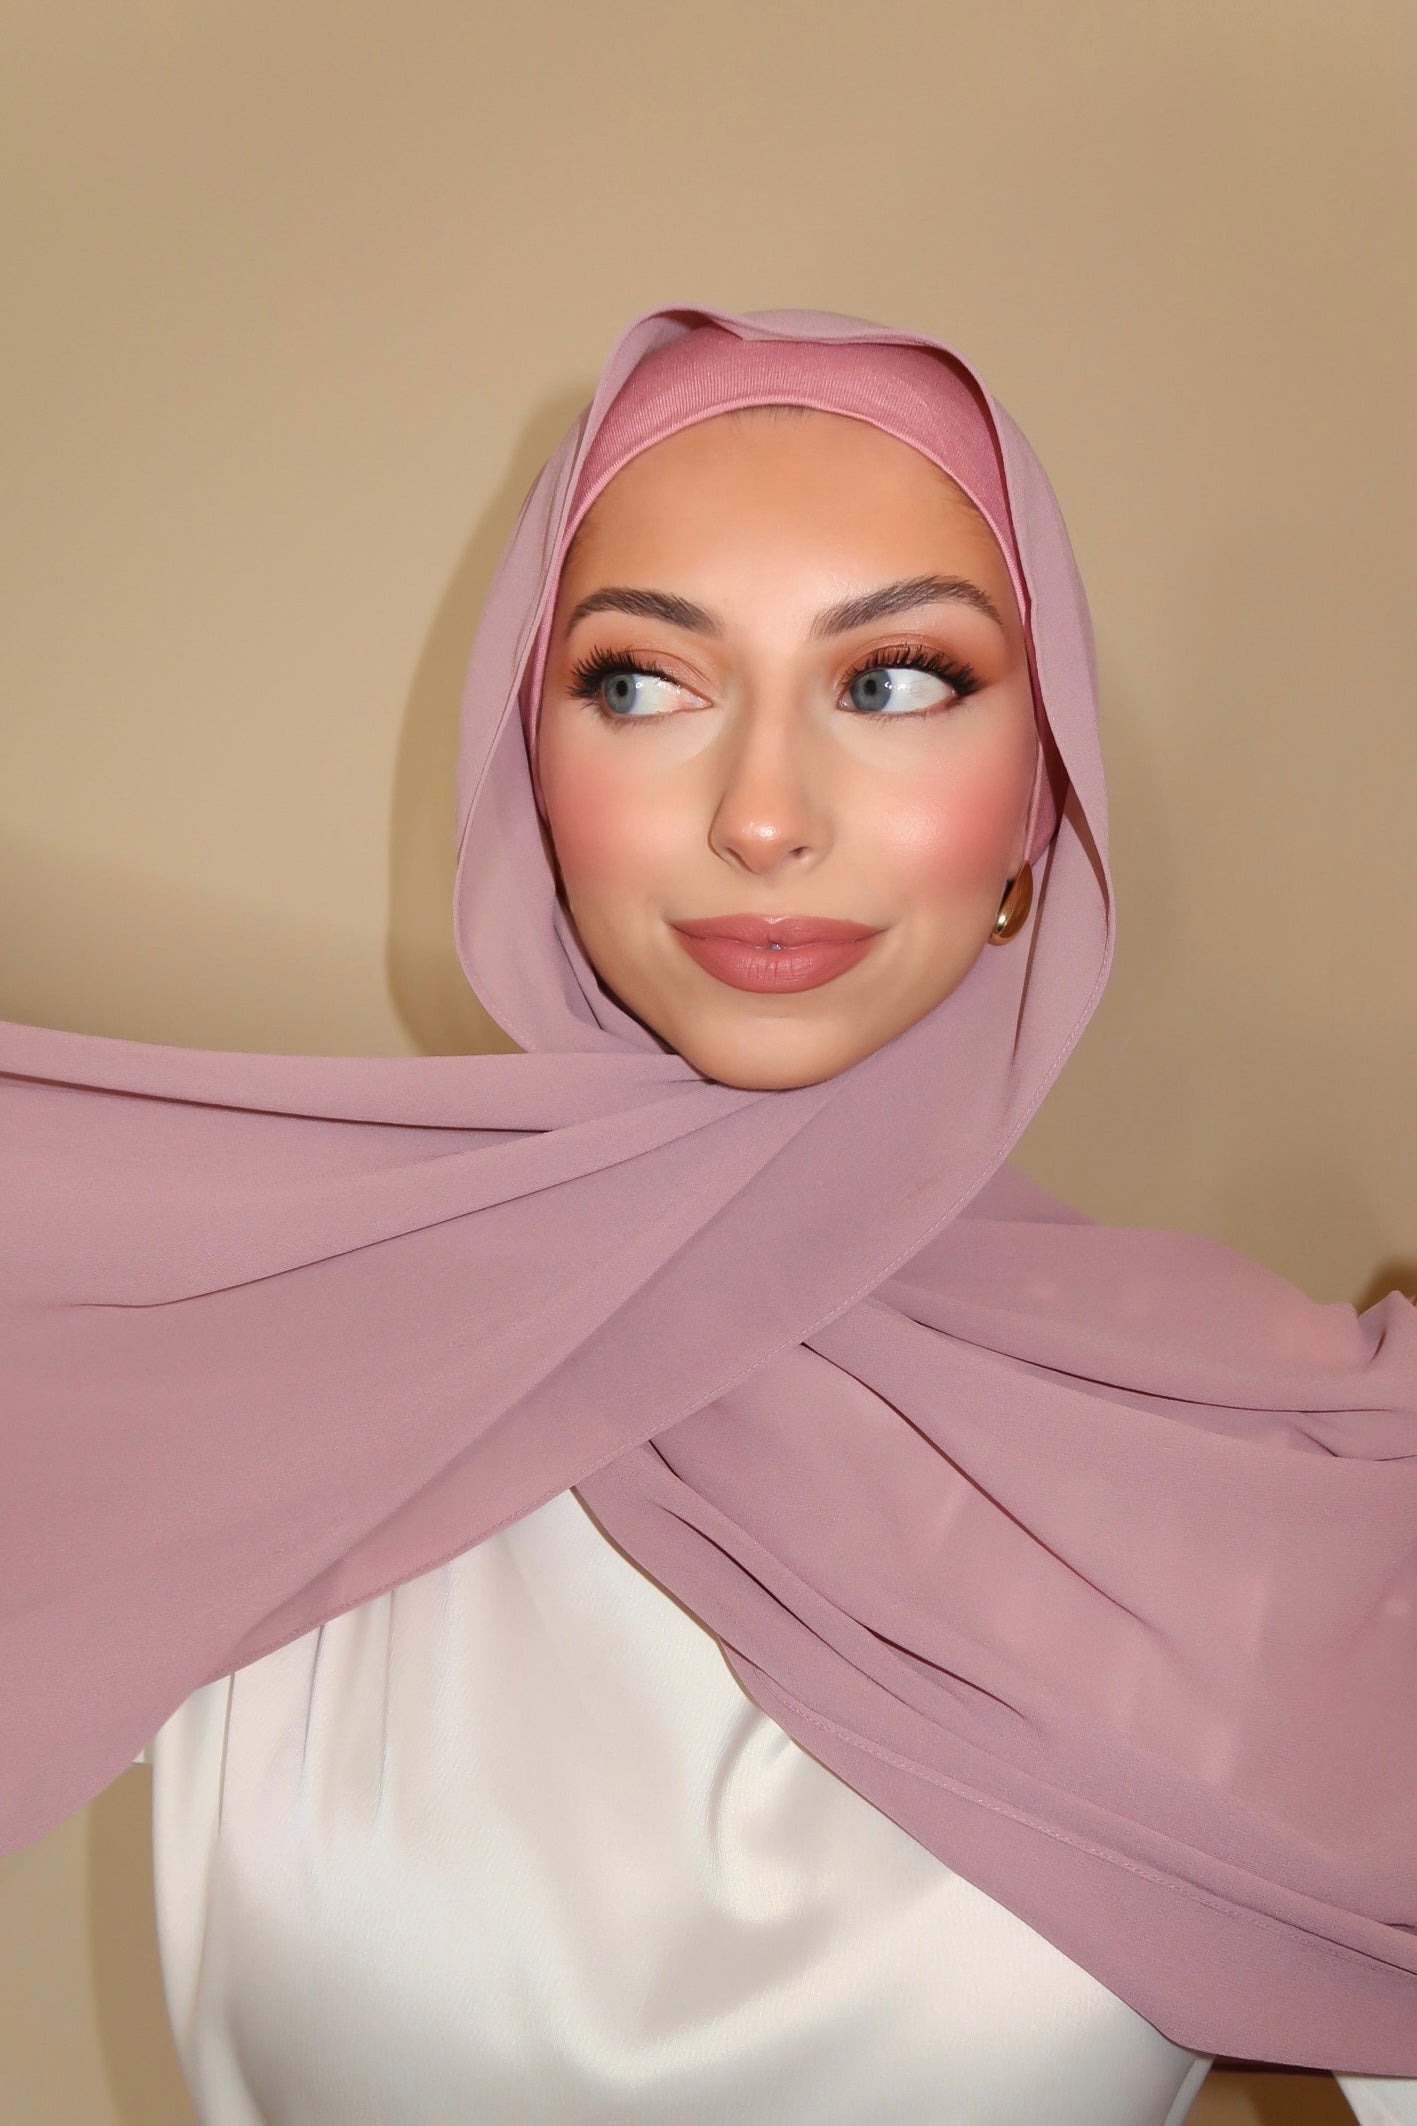 Load video: Wind proof hijab hack / tutorial using fashion tape / hijab tape tutorial